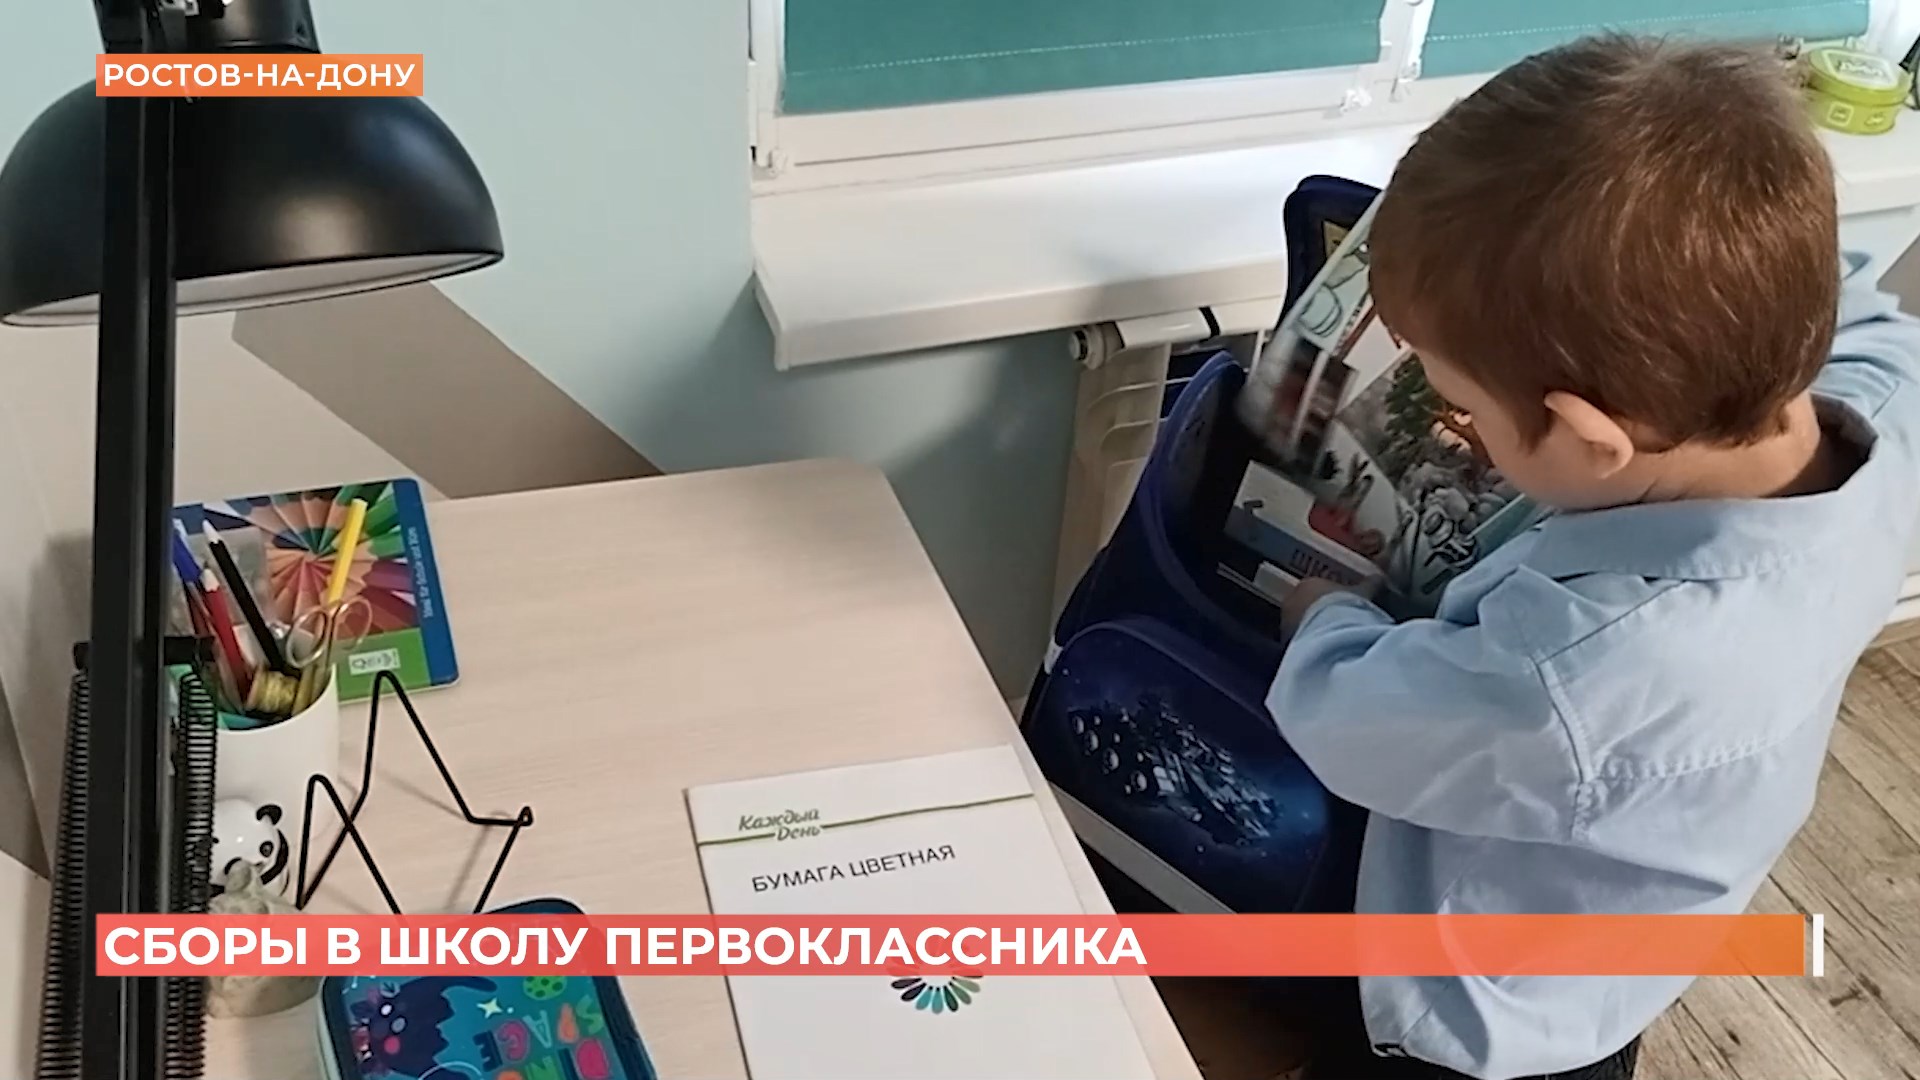 ВЦИОМ: одеть в школу мальчика-первоклассника в этом году стоит 22 000 рублей